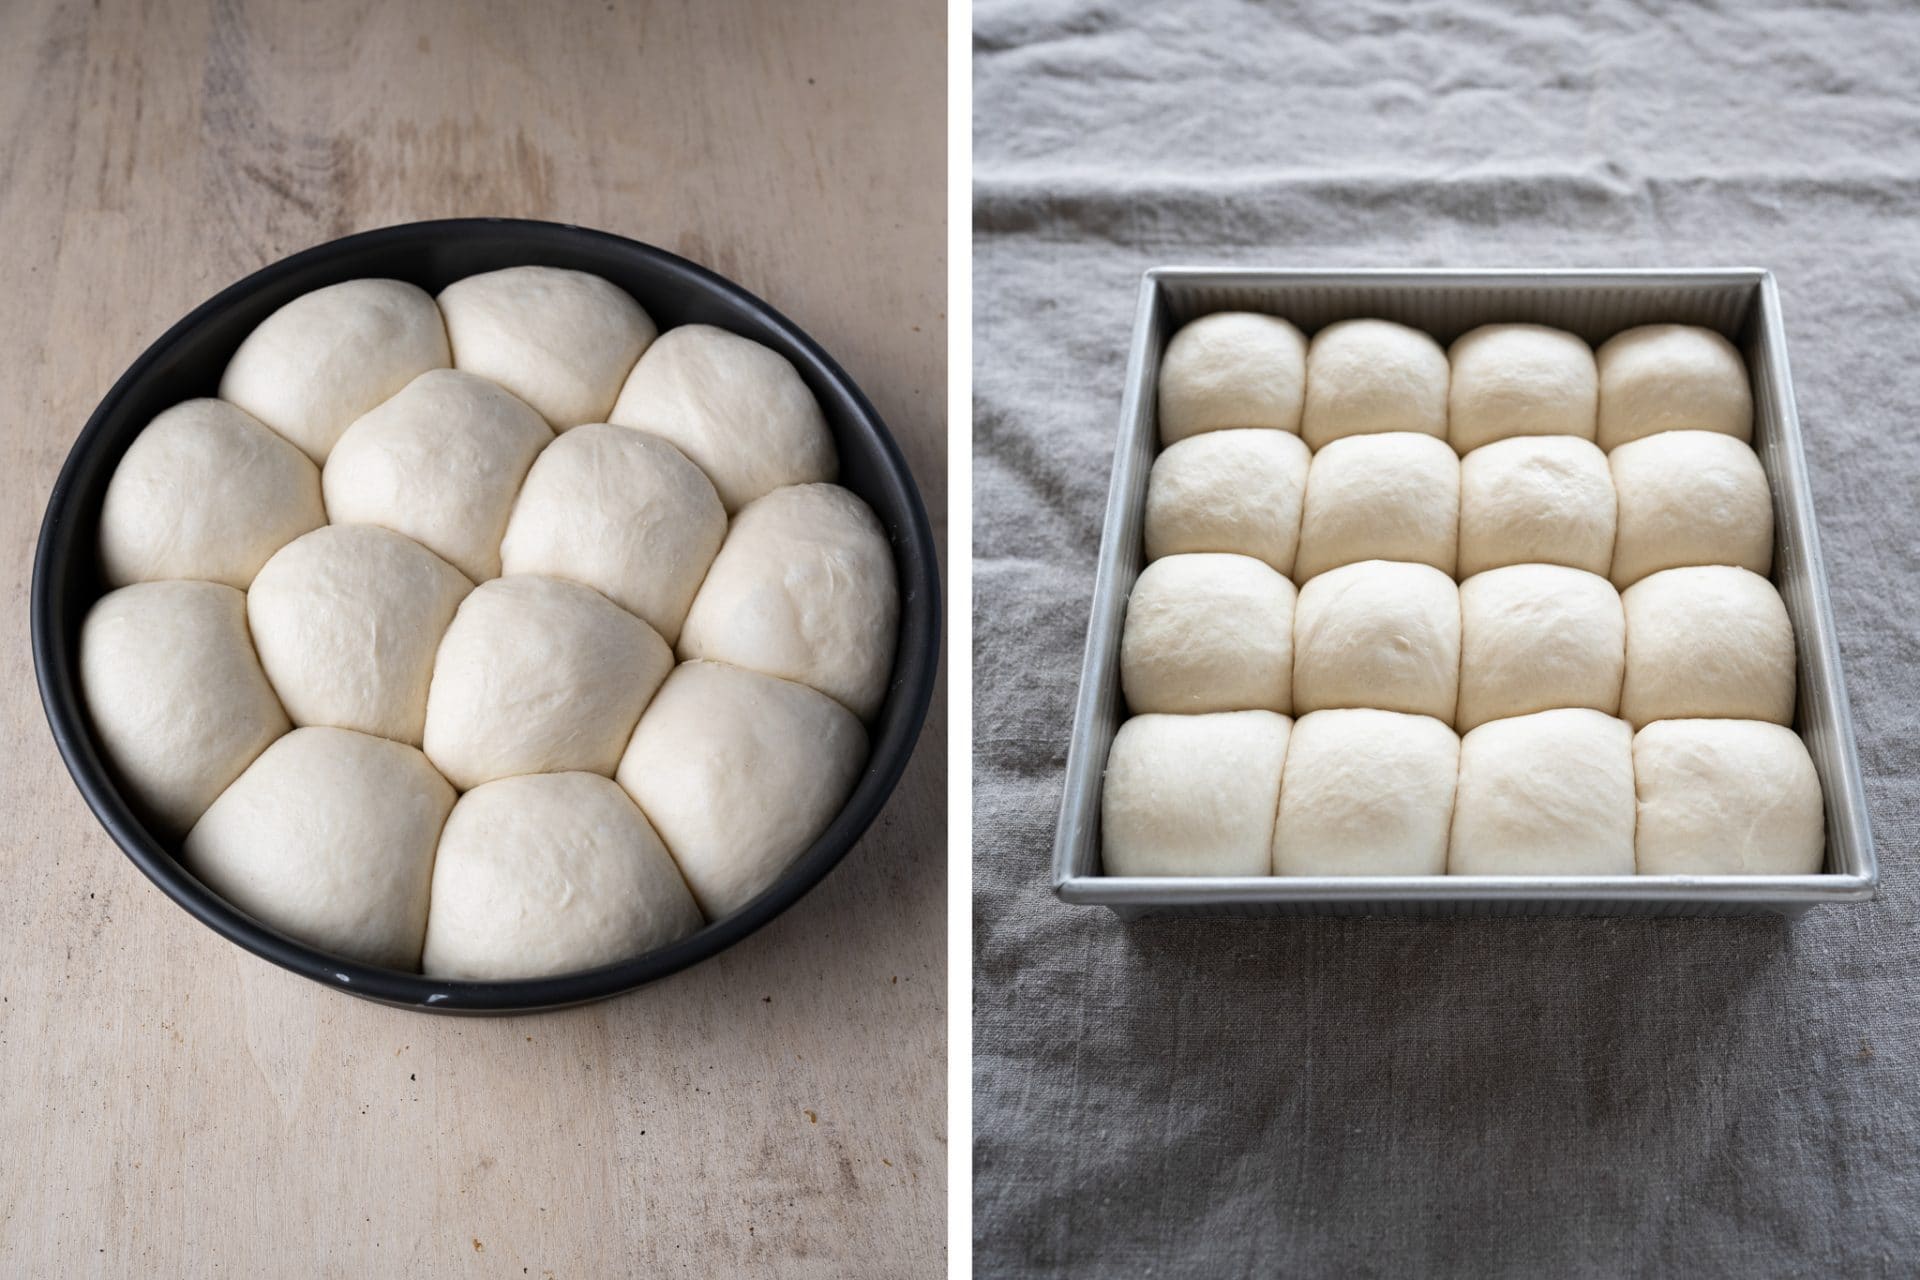 Sourdough rolls baking pan comparison